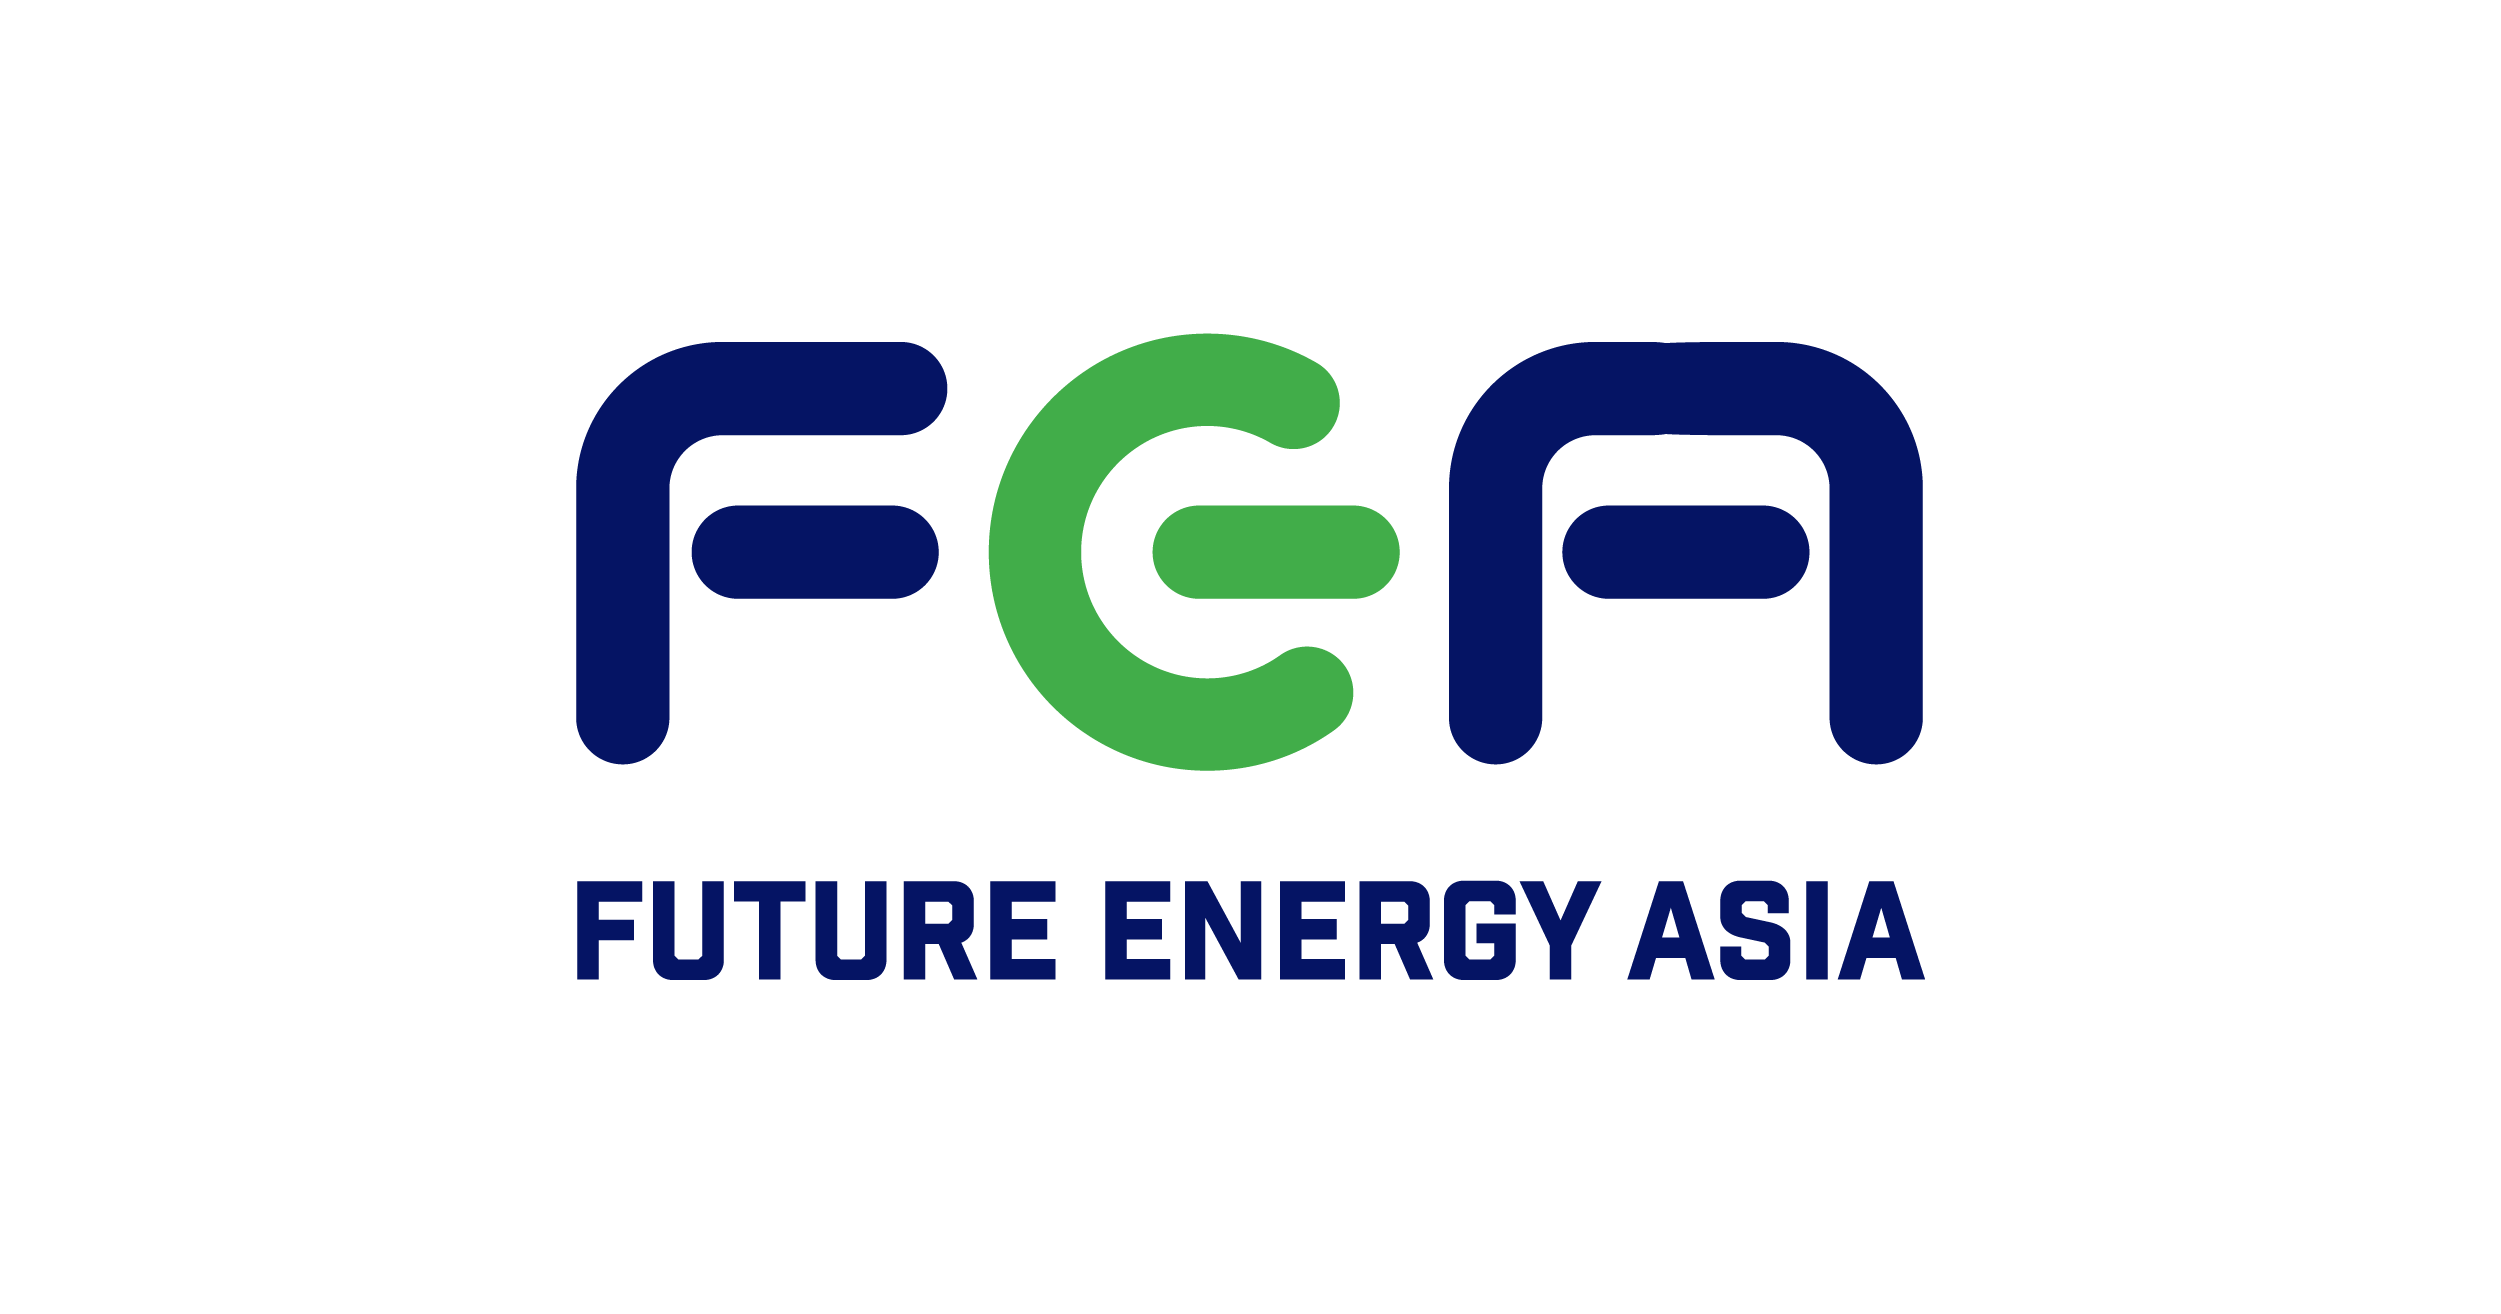 (c) Futureenergyasia.com